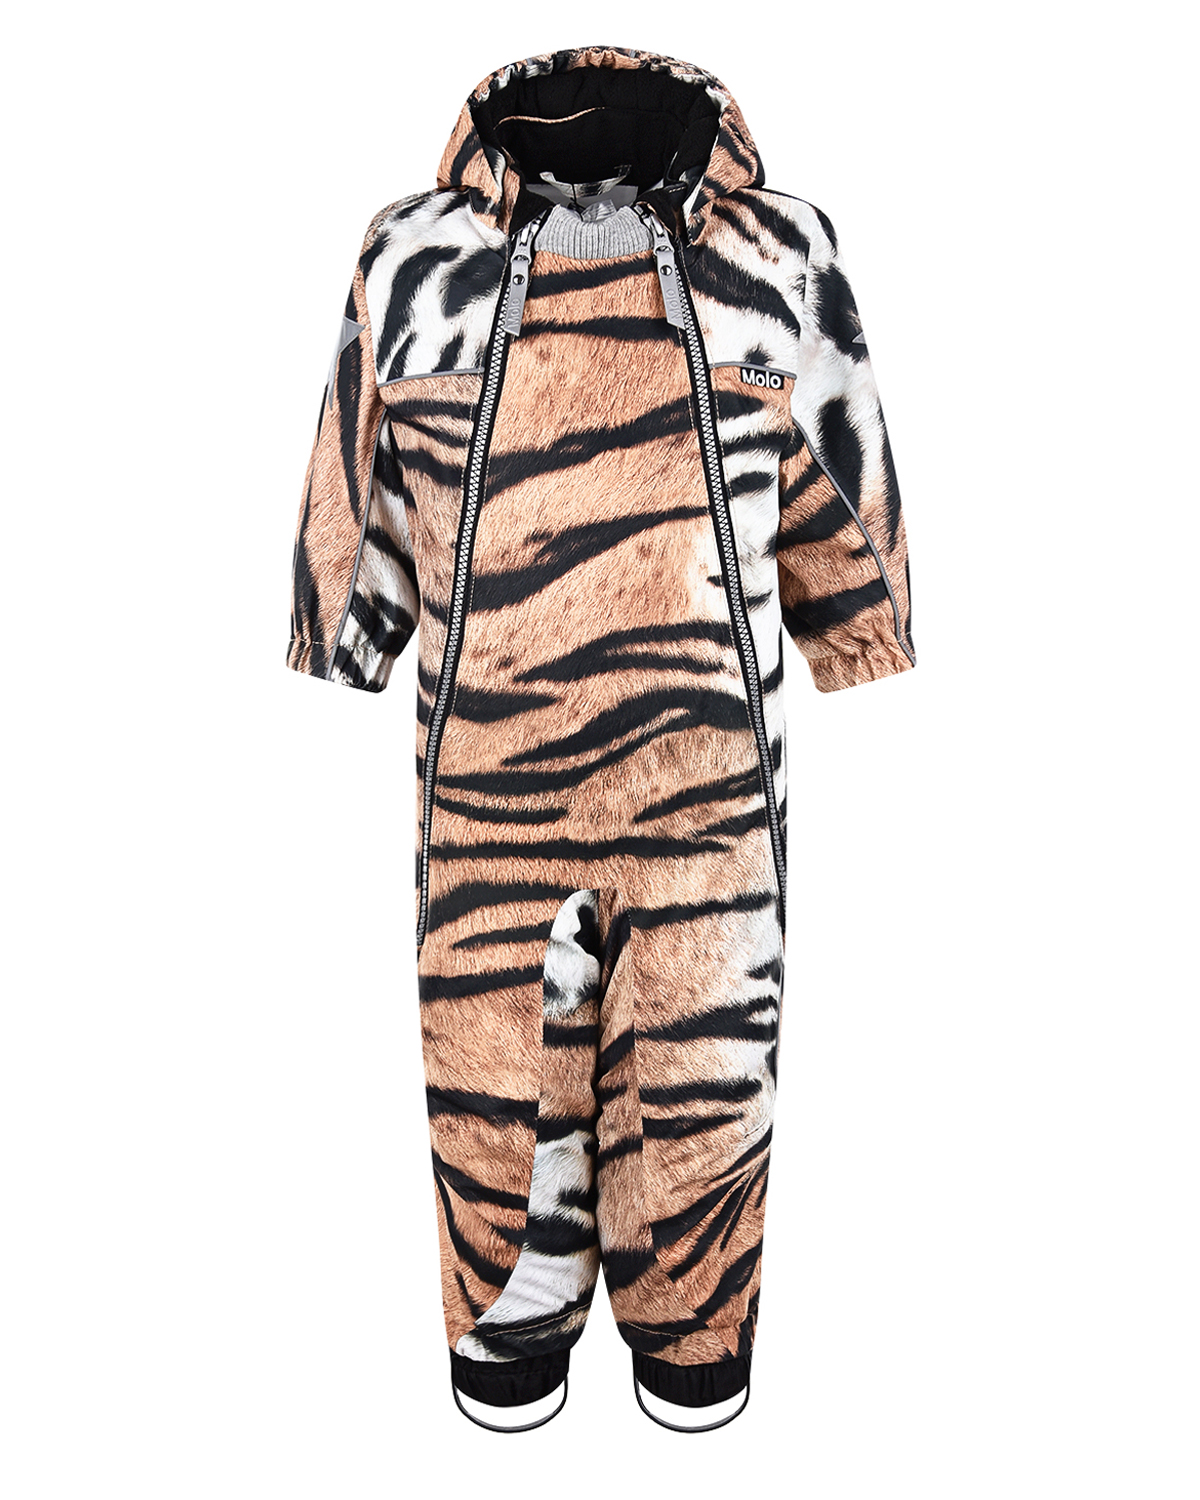 Комбинезон с принтом "Тигр" Molo детский, размер 80, цвет коричневый - фото 1